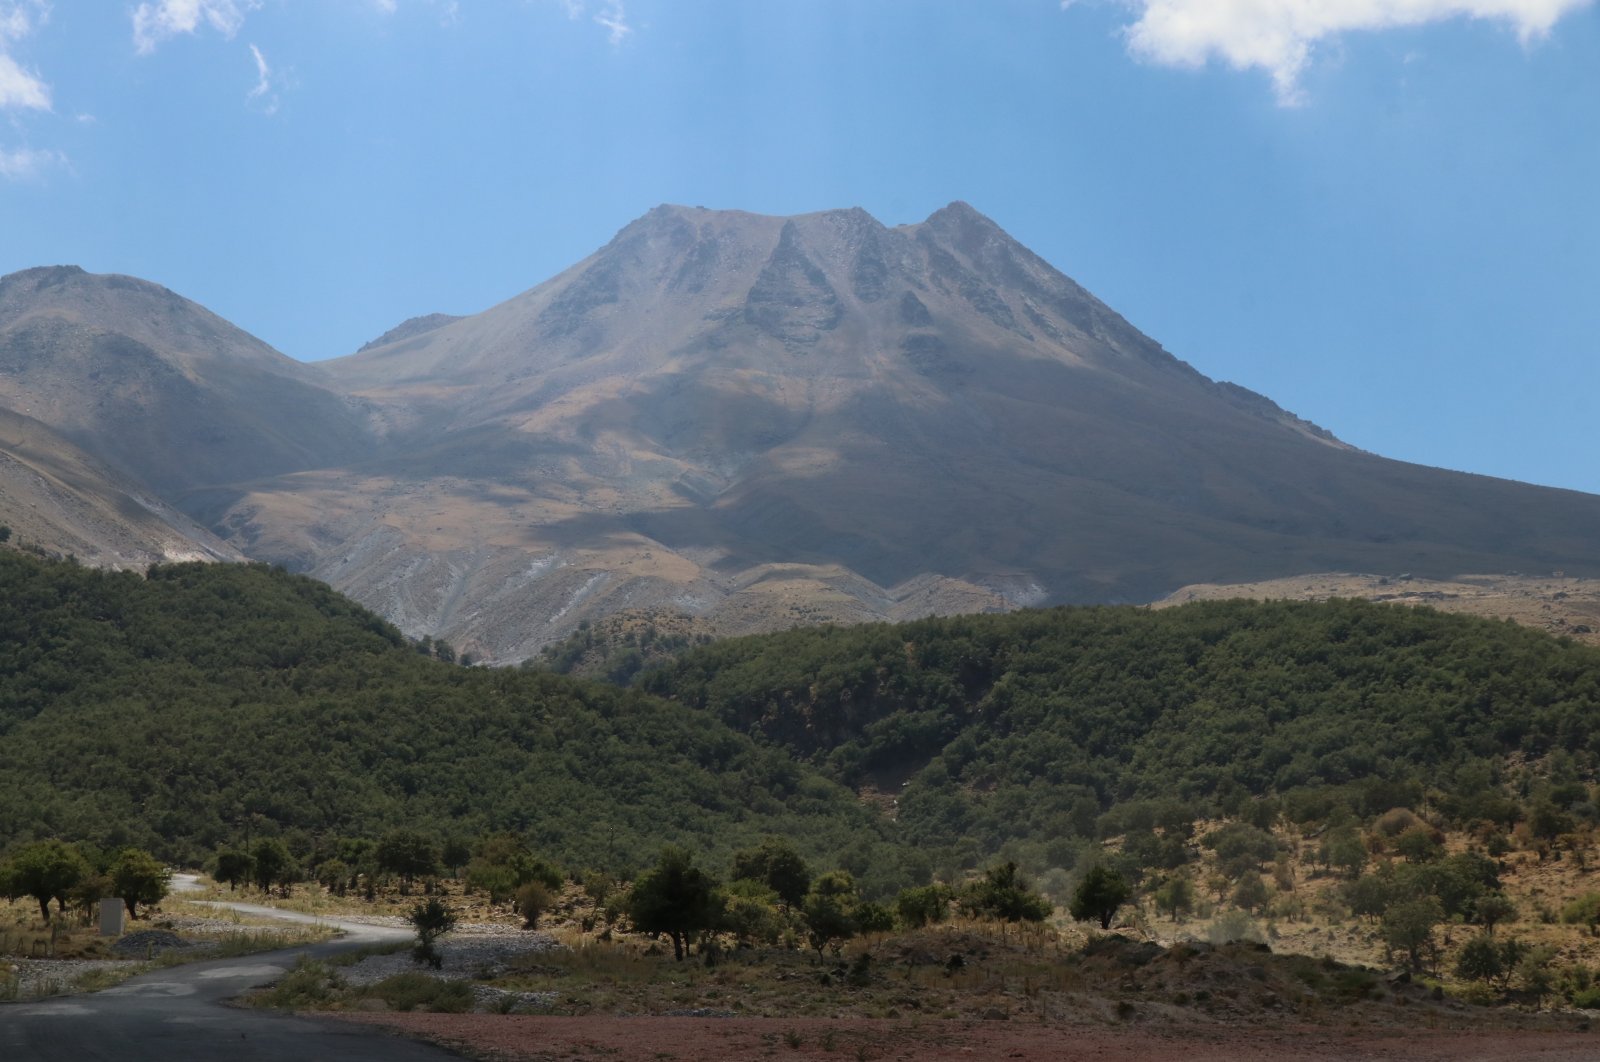 Gempa bumi membangkitkan gunung berapi yang sudah lama tidak aktif di Turki tengah